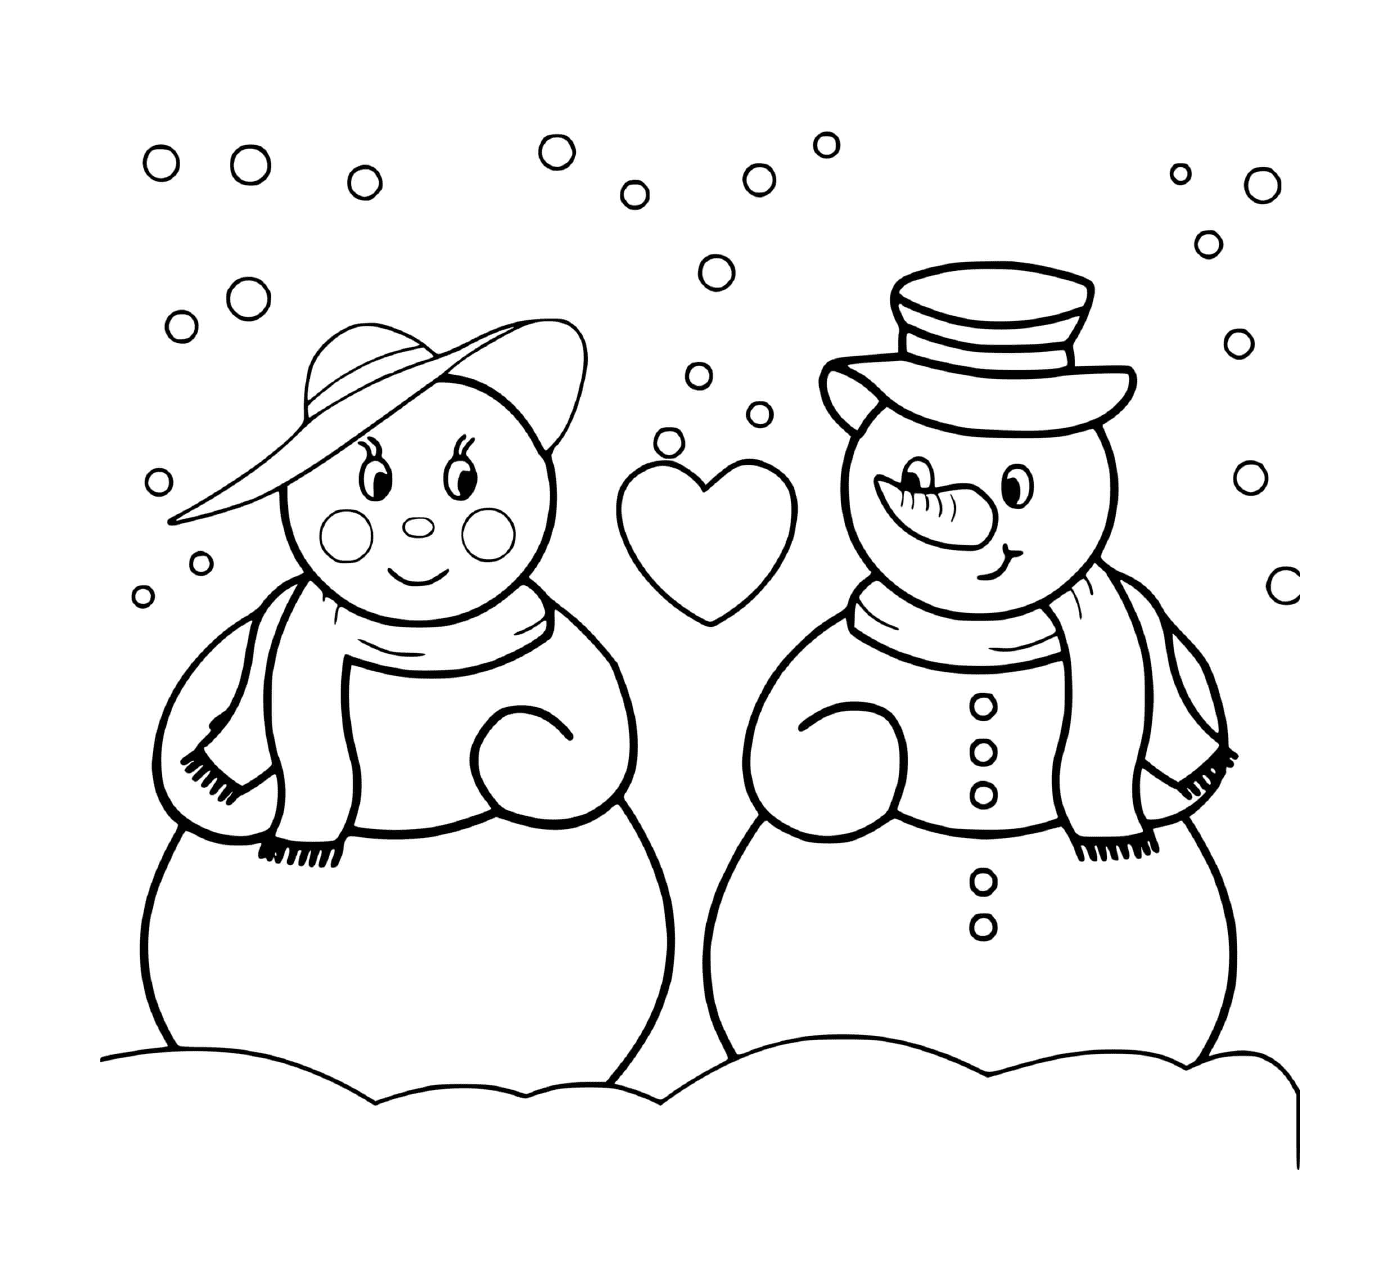  # اثنين من الثثان من الثلوج في الحب # # # اثنين من الثلوج في الحب # # # اثنين من الحب في الحب # # # 